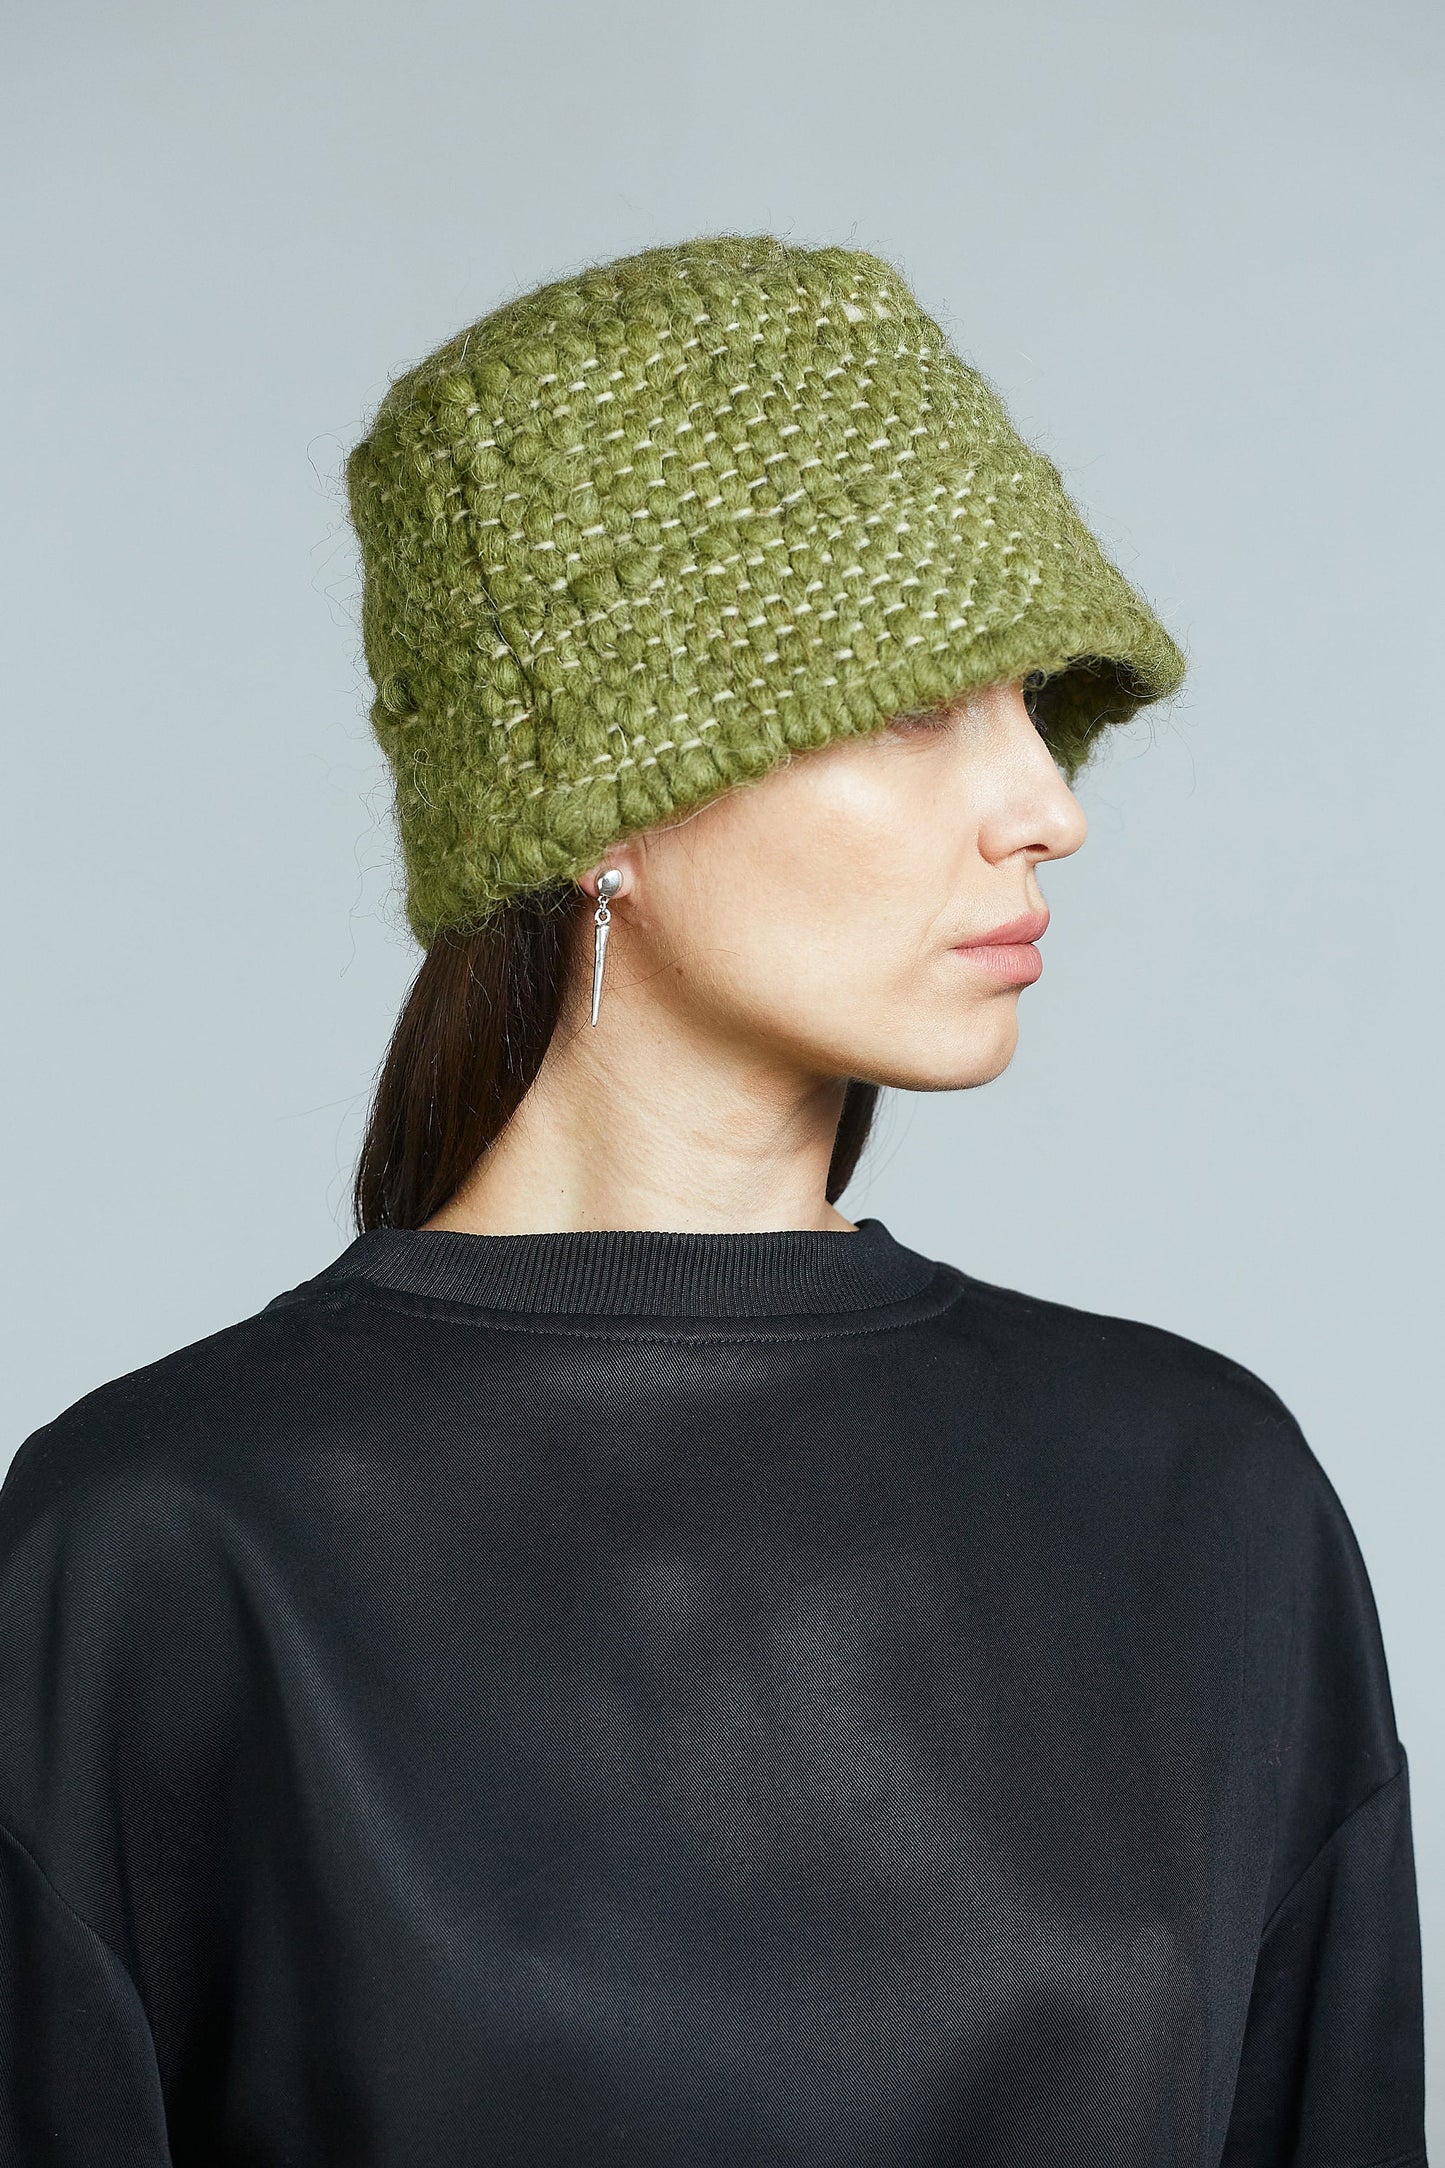 Green wool hat